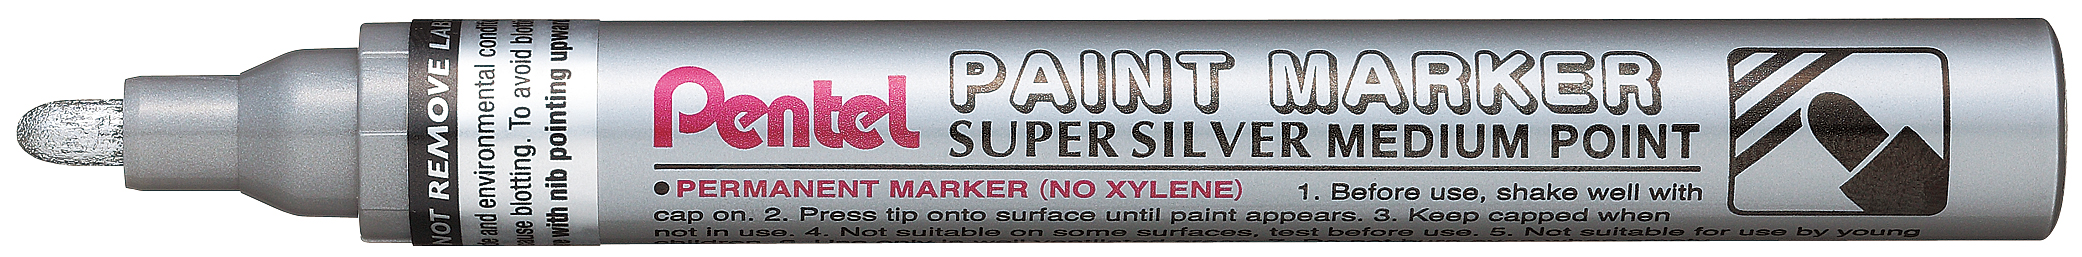 Pentel Paint Super - Marqueur permanent - pointe moyenne - argent